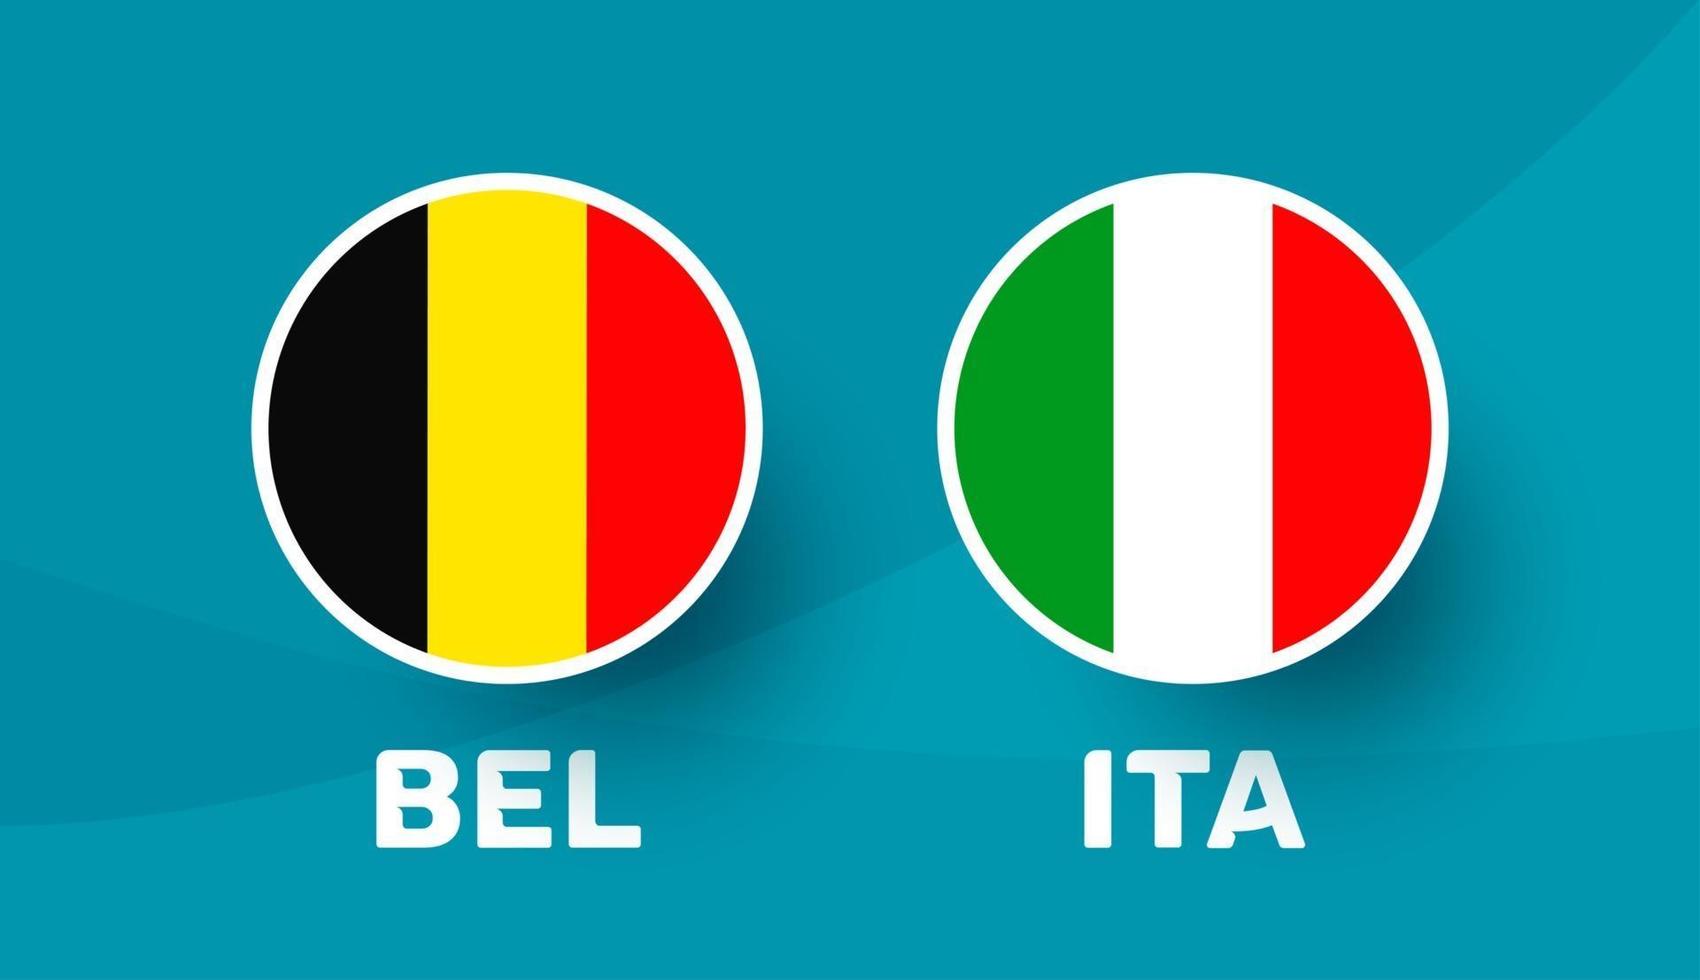 België vs Italië match vector illustratie voetbal 2020 kampioenschap